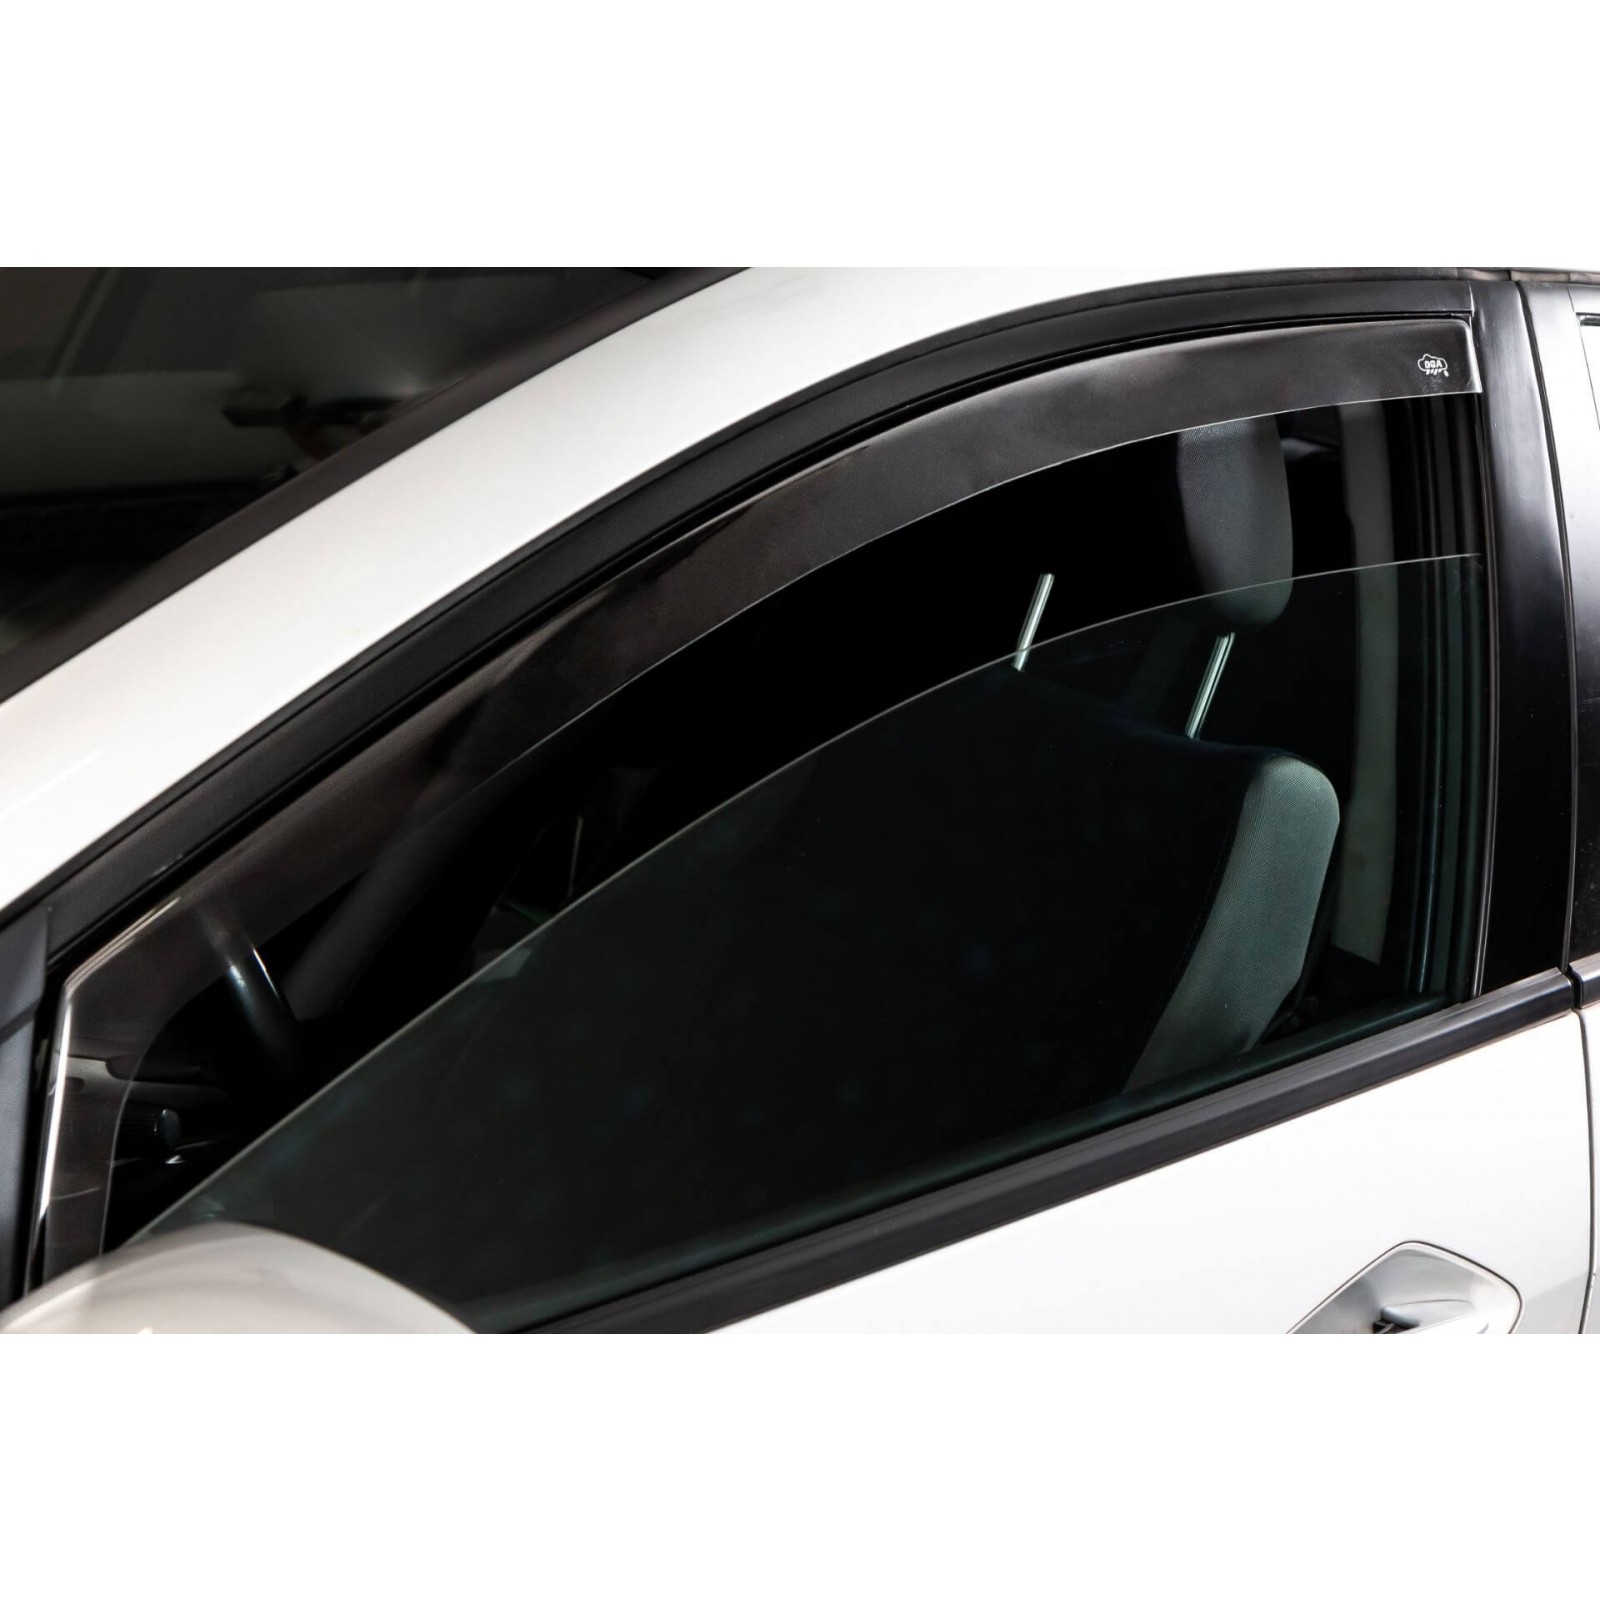 Déflecteur d'air pour vitres latérales pour Ford Focus IV